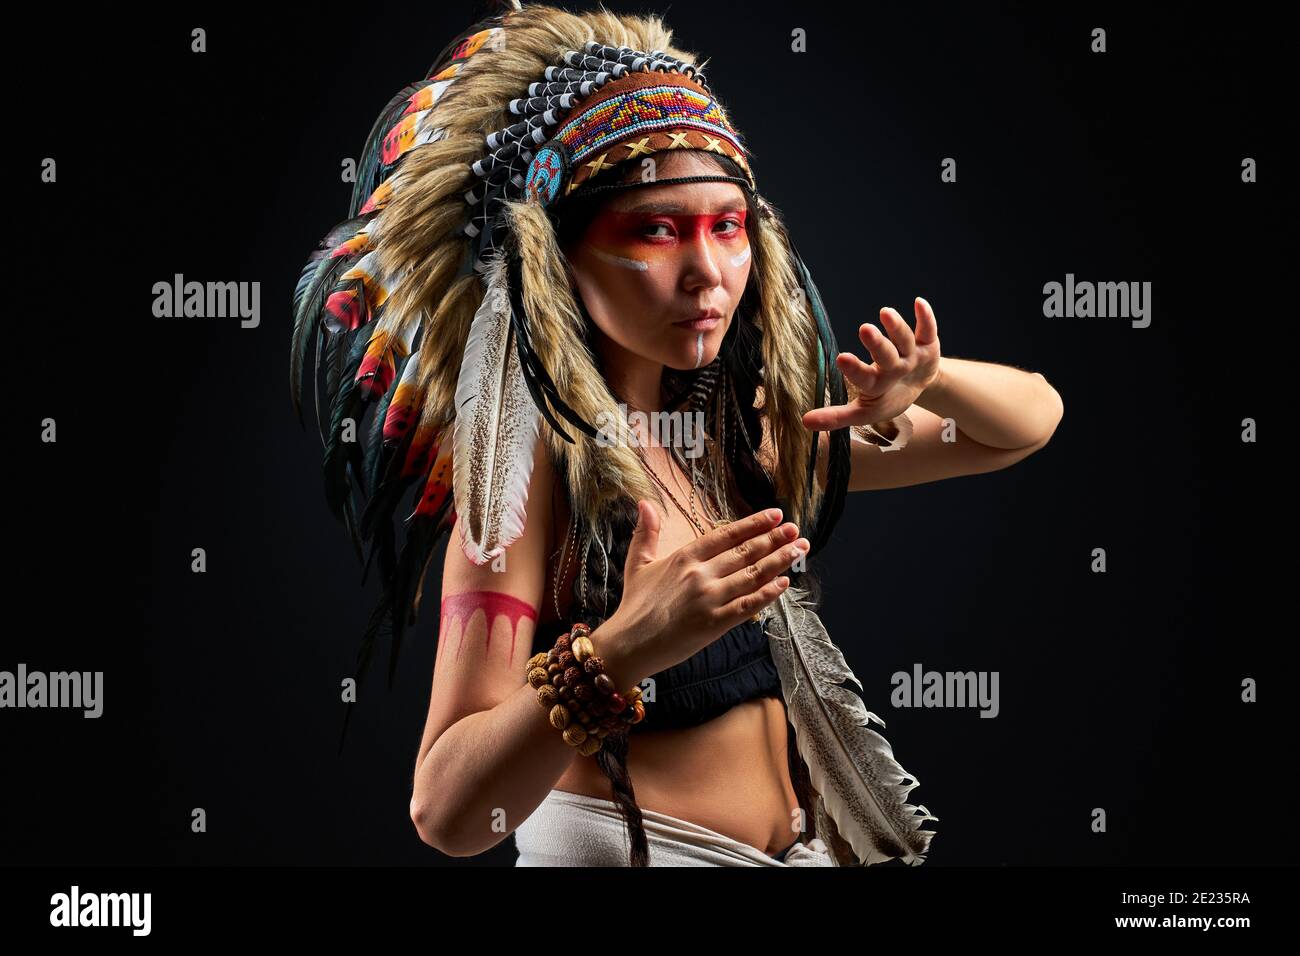 Modèle en port indien et maquillage coloré posant à la caméra, avec des plumes sur la tête. Tenue des peuples autochtones des Amériques, femme ethnique Banque D'Images